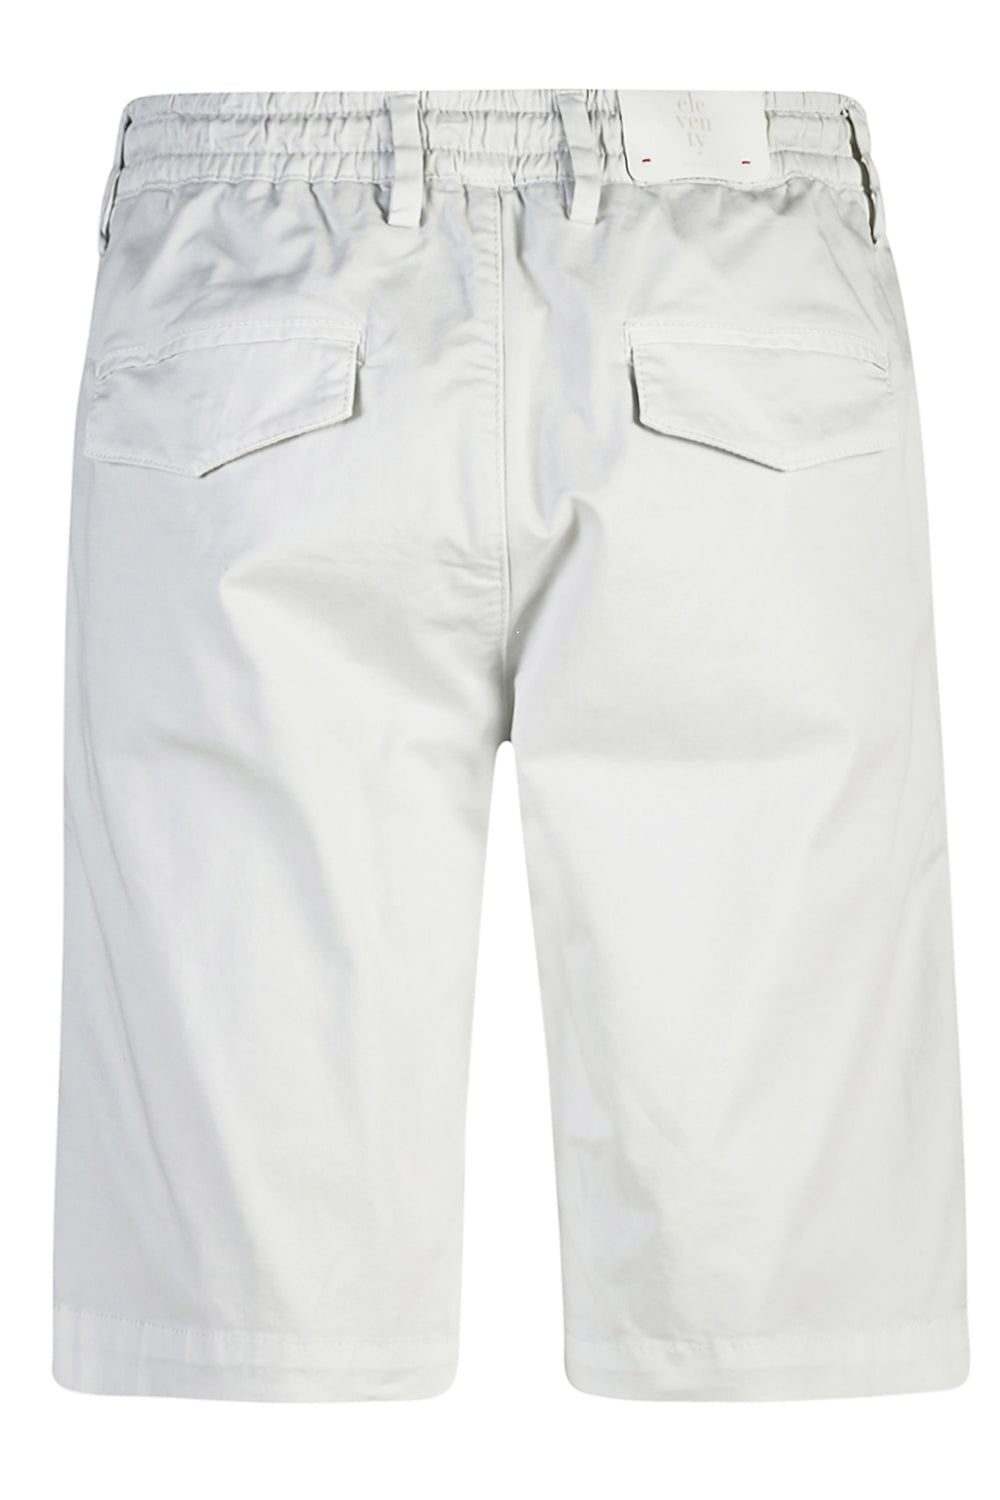 ELEVENTY-Bermuda Shorts - White-